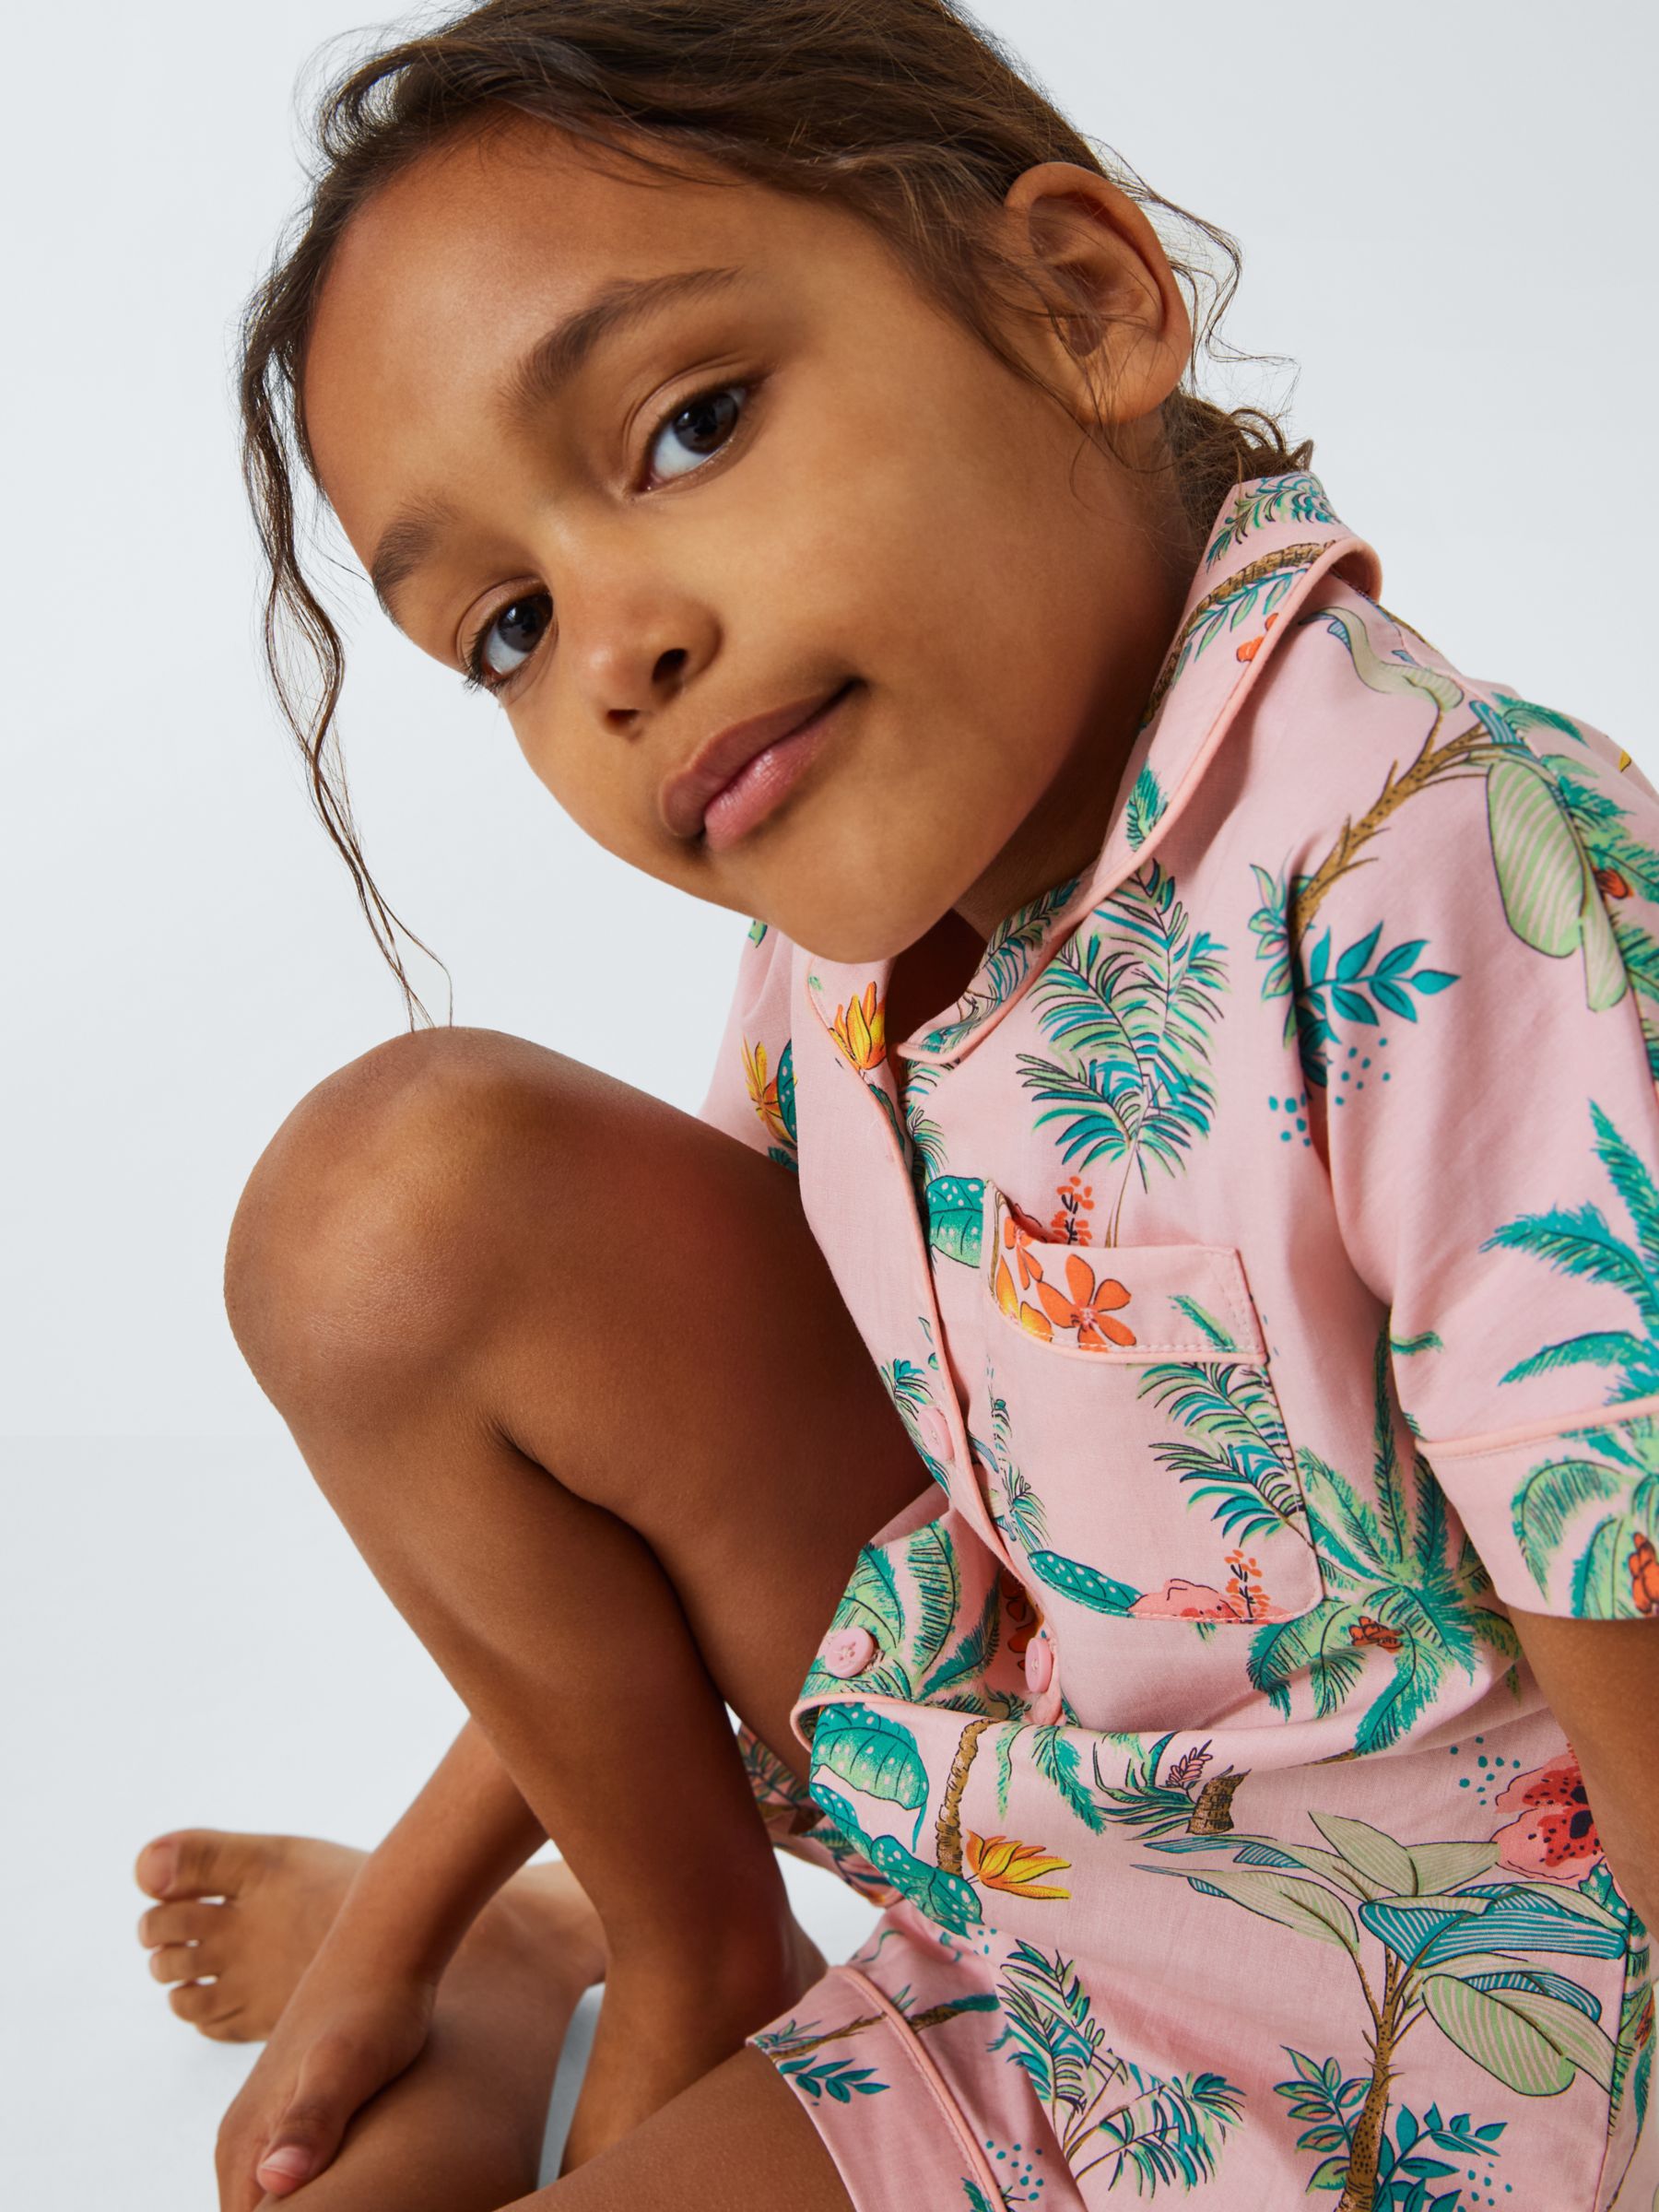 John Lewis Kids' Hibiscus Palm Shirt Short Pyjama Set, Pink, 3 years